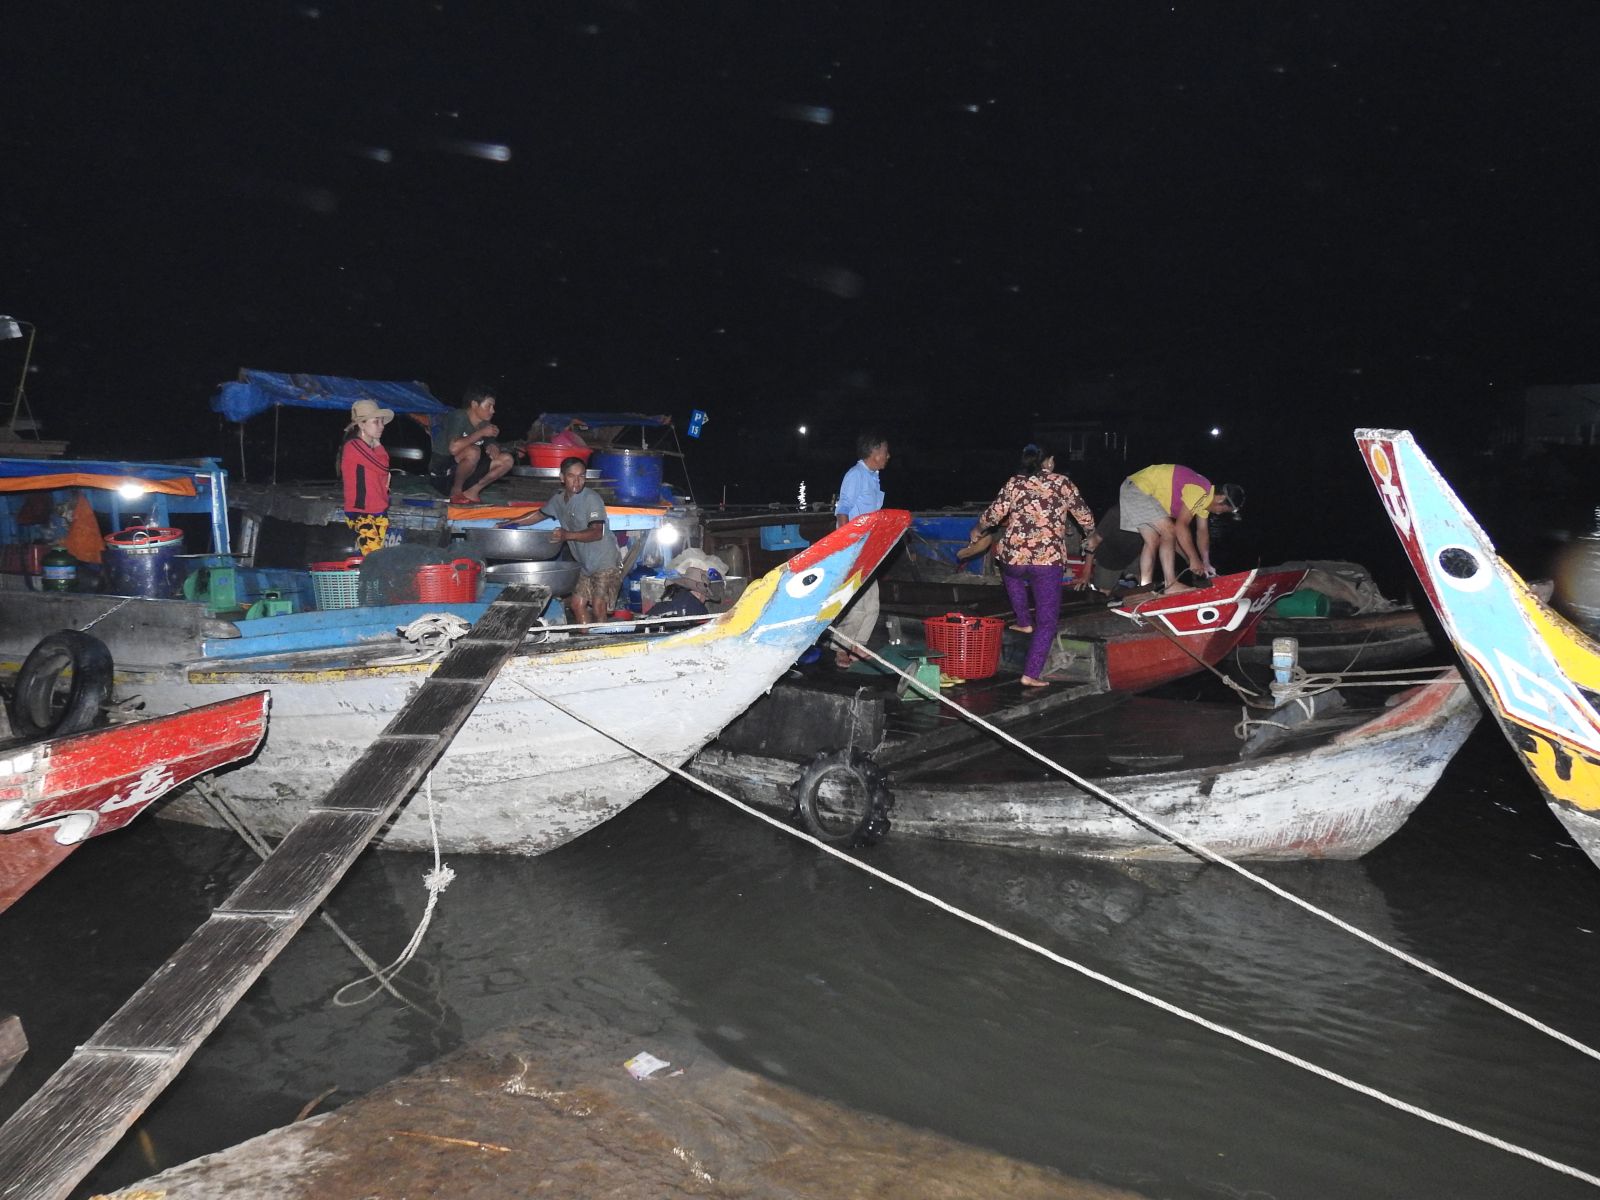 Khoảng 1 giờ mỗi ngày, chợ Tân Thành bắt đầu nhộn nhịp. Sau những ngày thu gom, lúc này các chủ đưa ghe đục chở cá đến chợ để bán lại cho thương lái chở đi các tỉnh, thành trong cả nước.